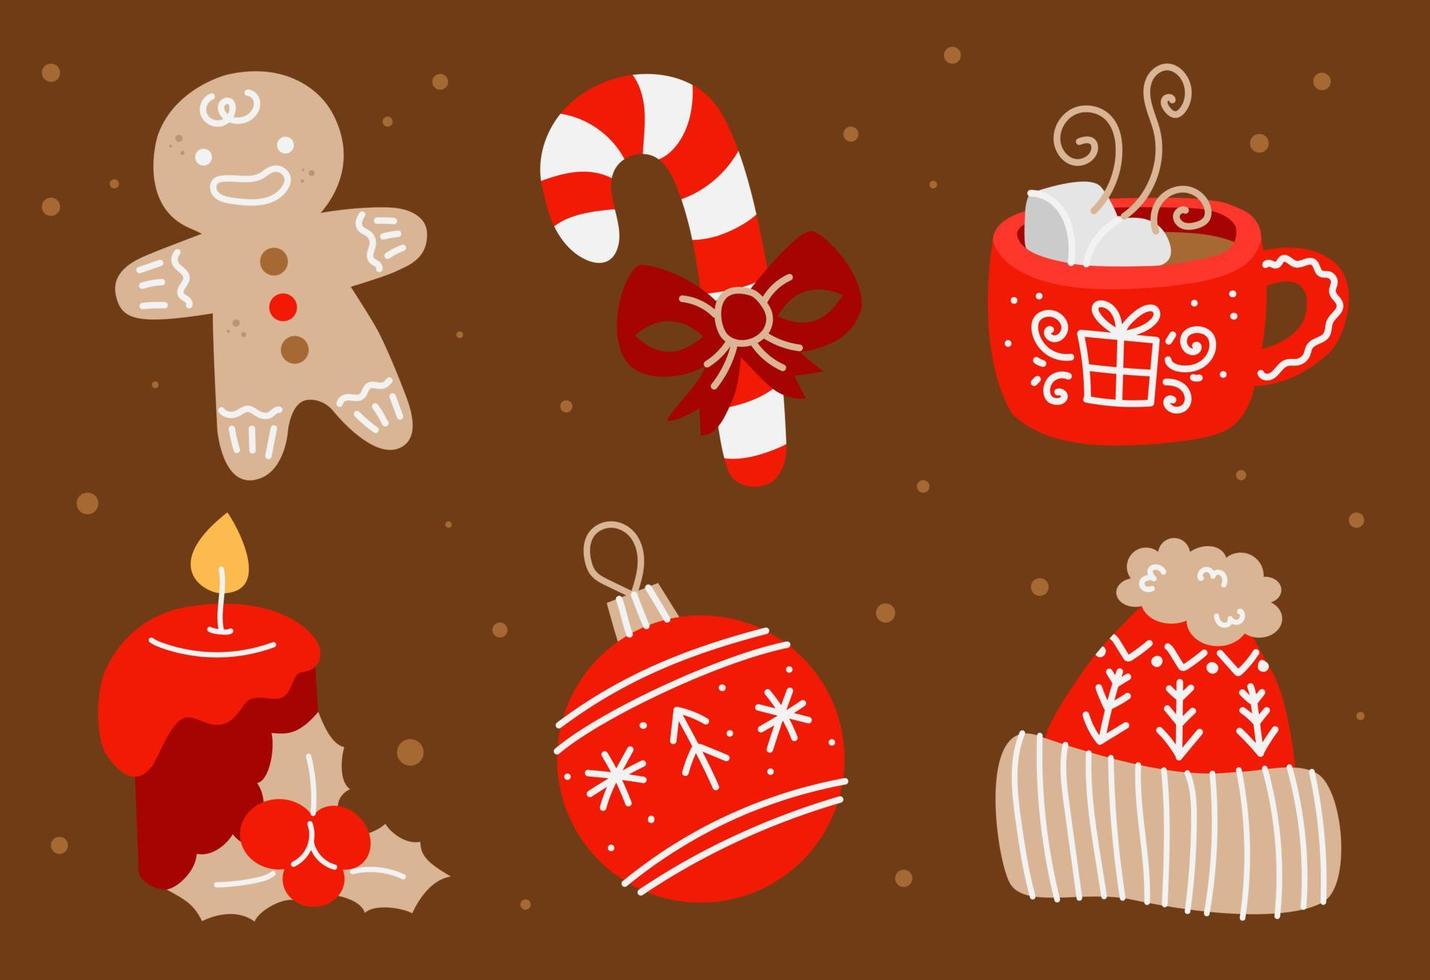 jul och ny år uppsättning med pepparkaka man, ljus, jul dekorationer, kakao och Övrig dekor element. design för grafik, vykort, affischer. vektor illustration.